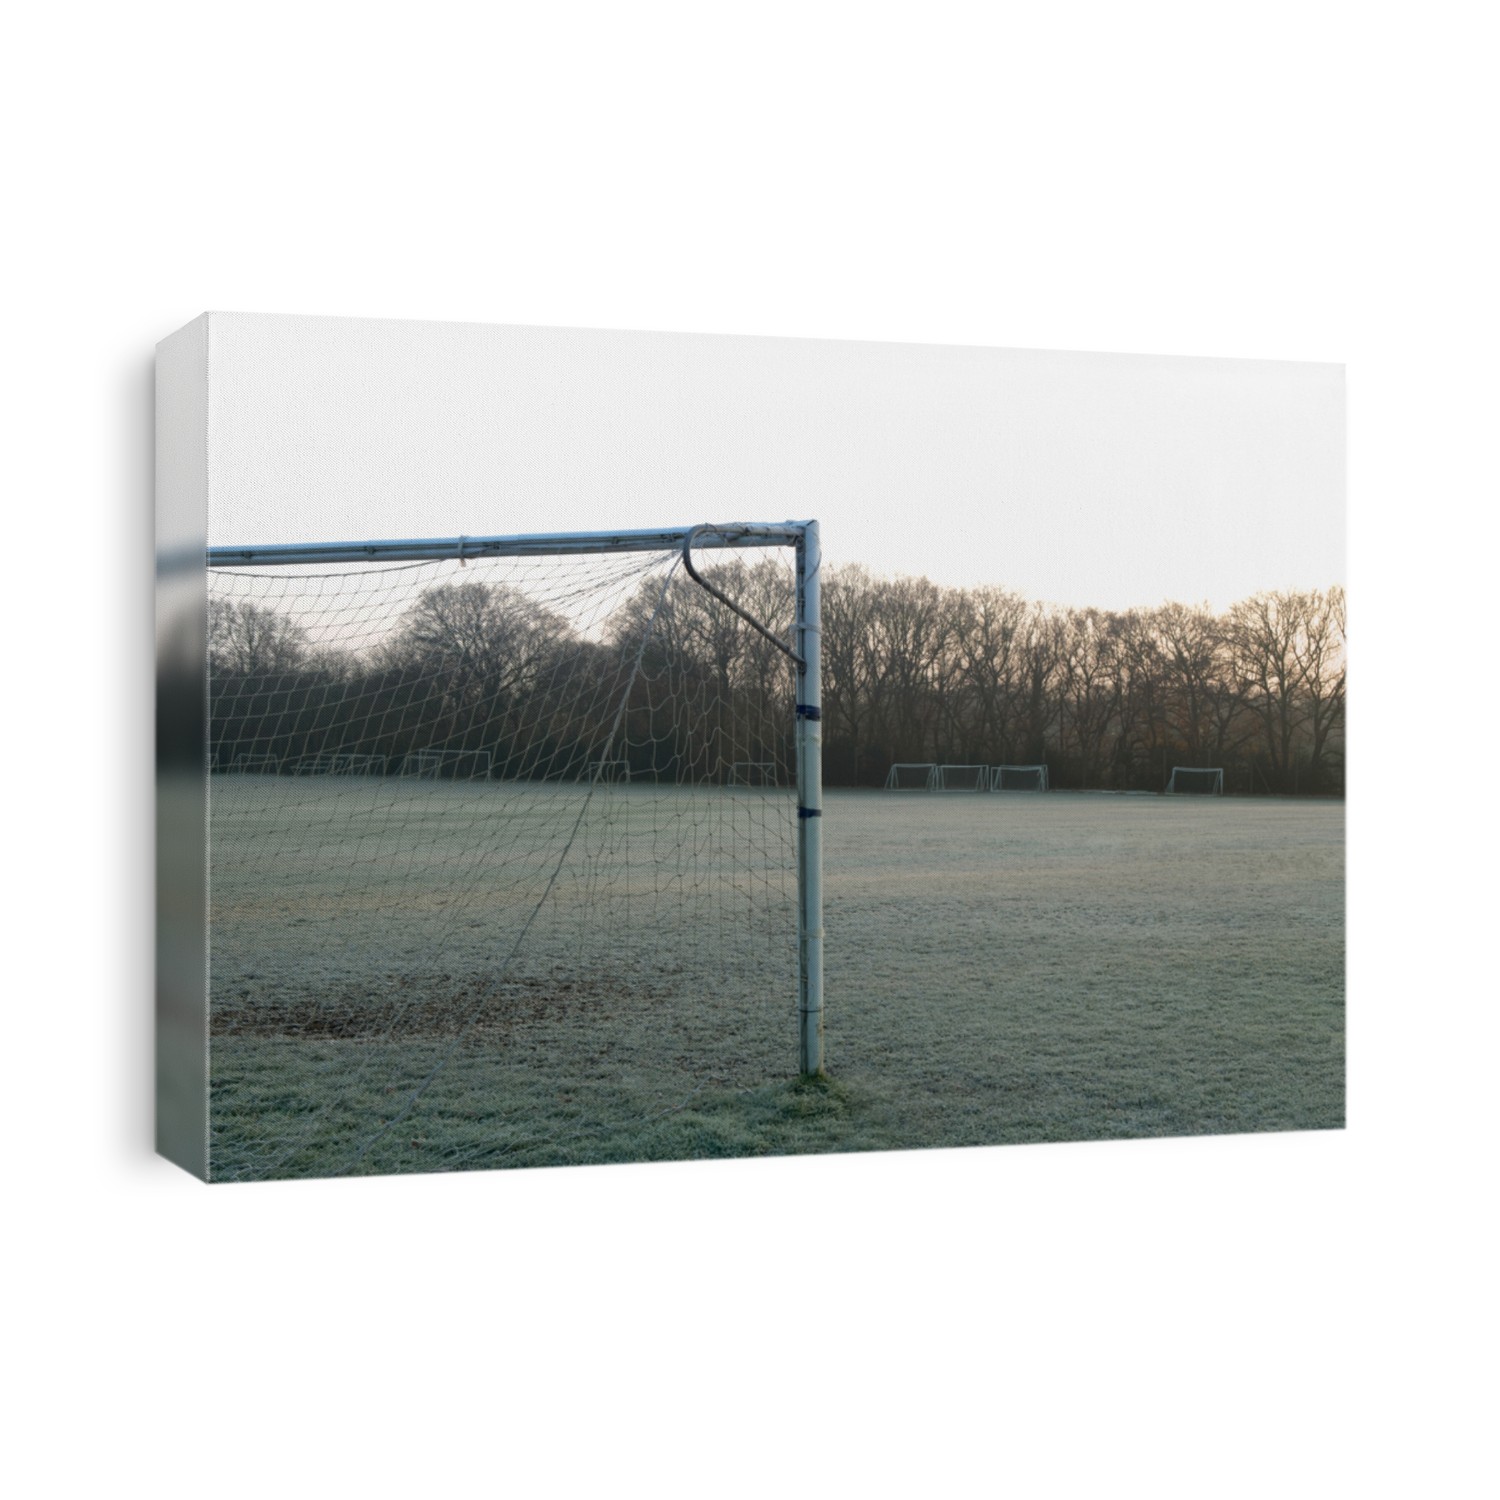 Goal post on empty soccer field